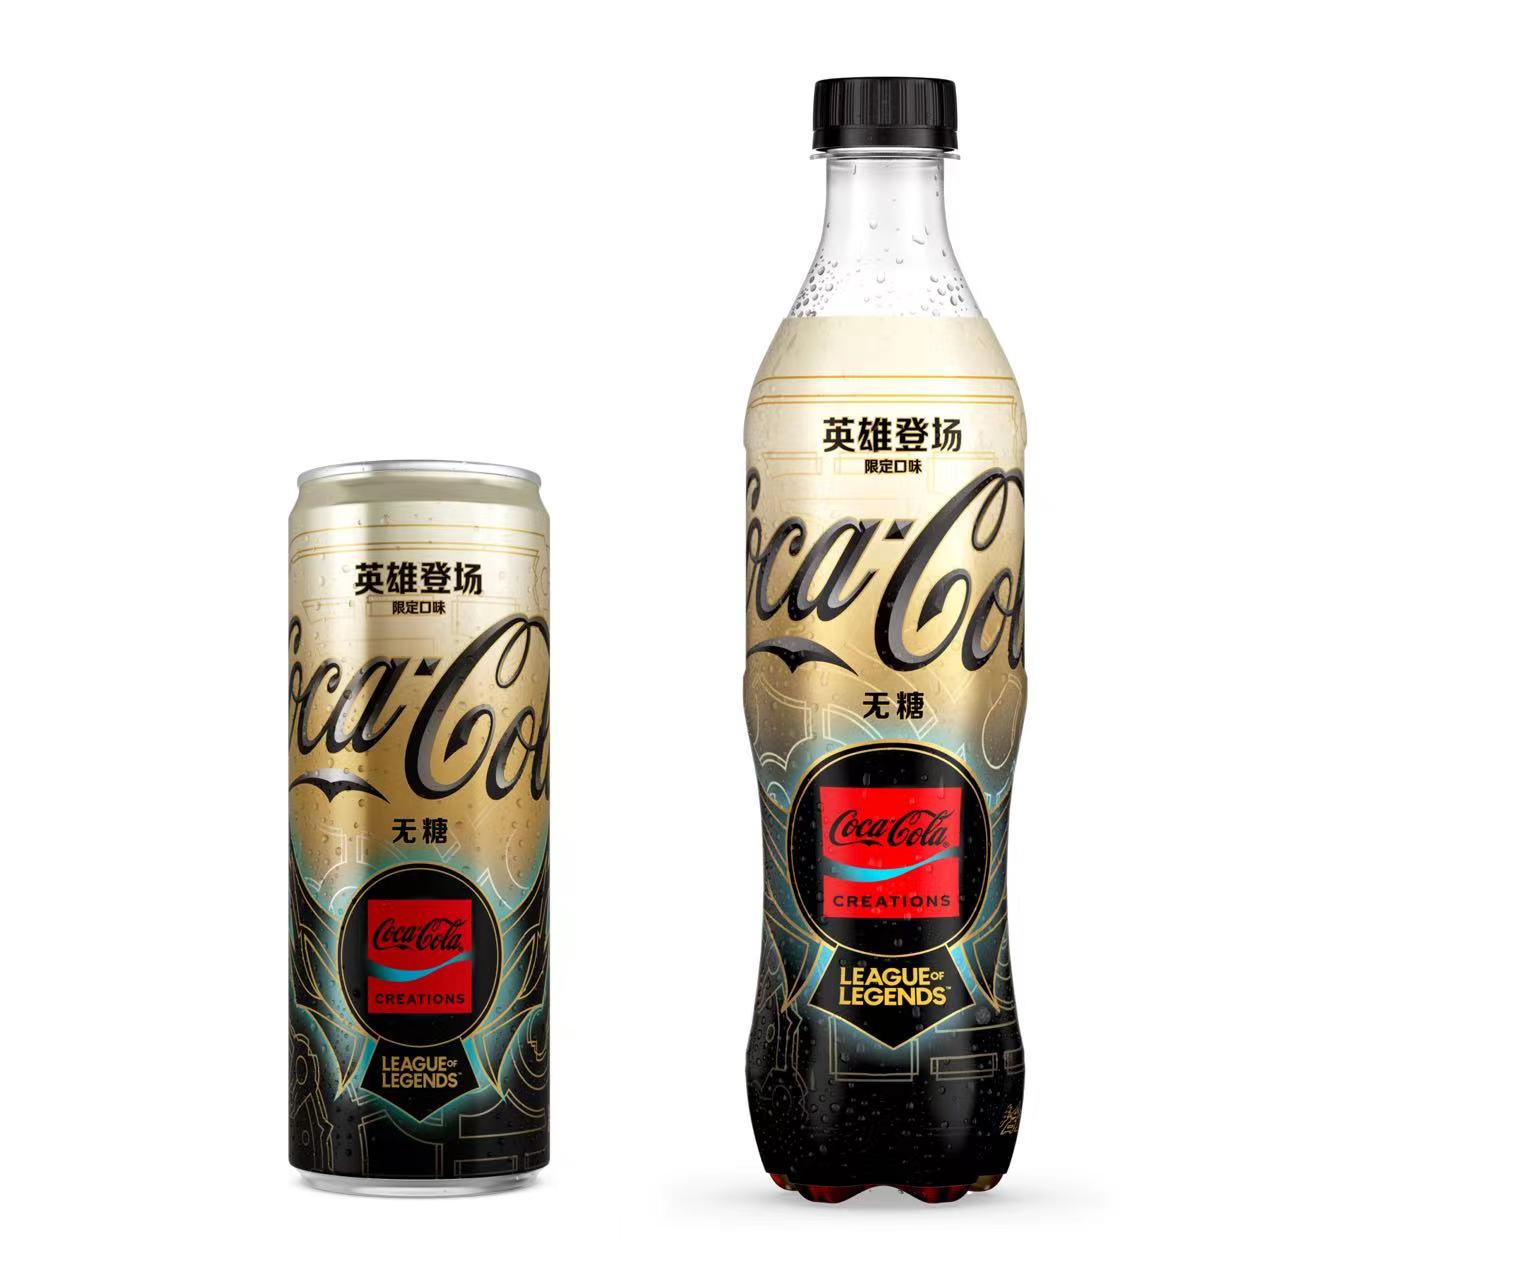 【可口可乐】“英雄登场”将推出摩登罐和PET塑料瓶包装两种规格